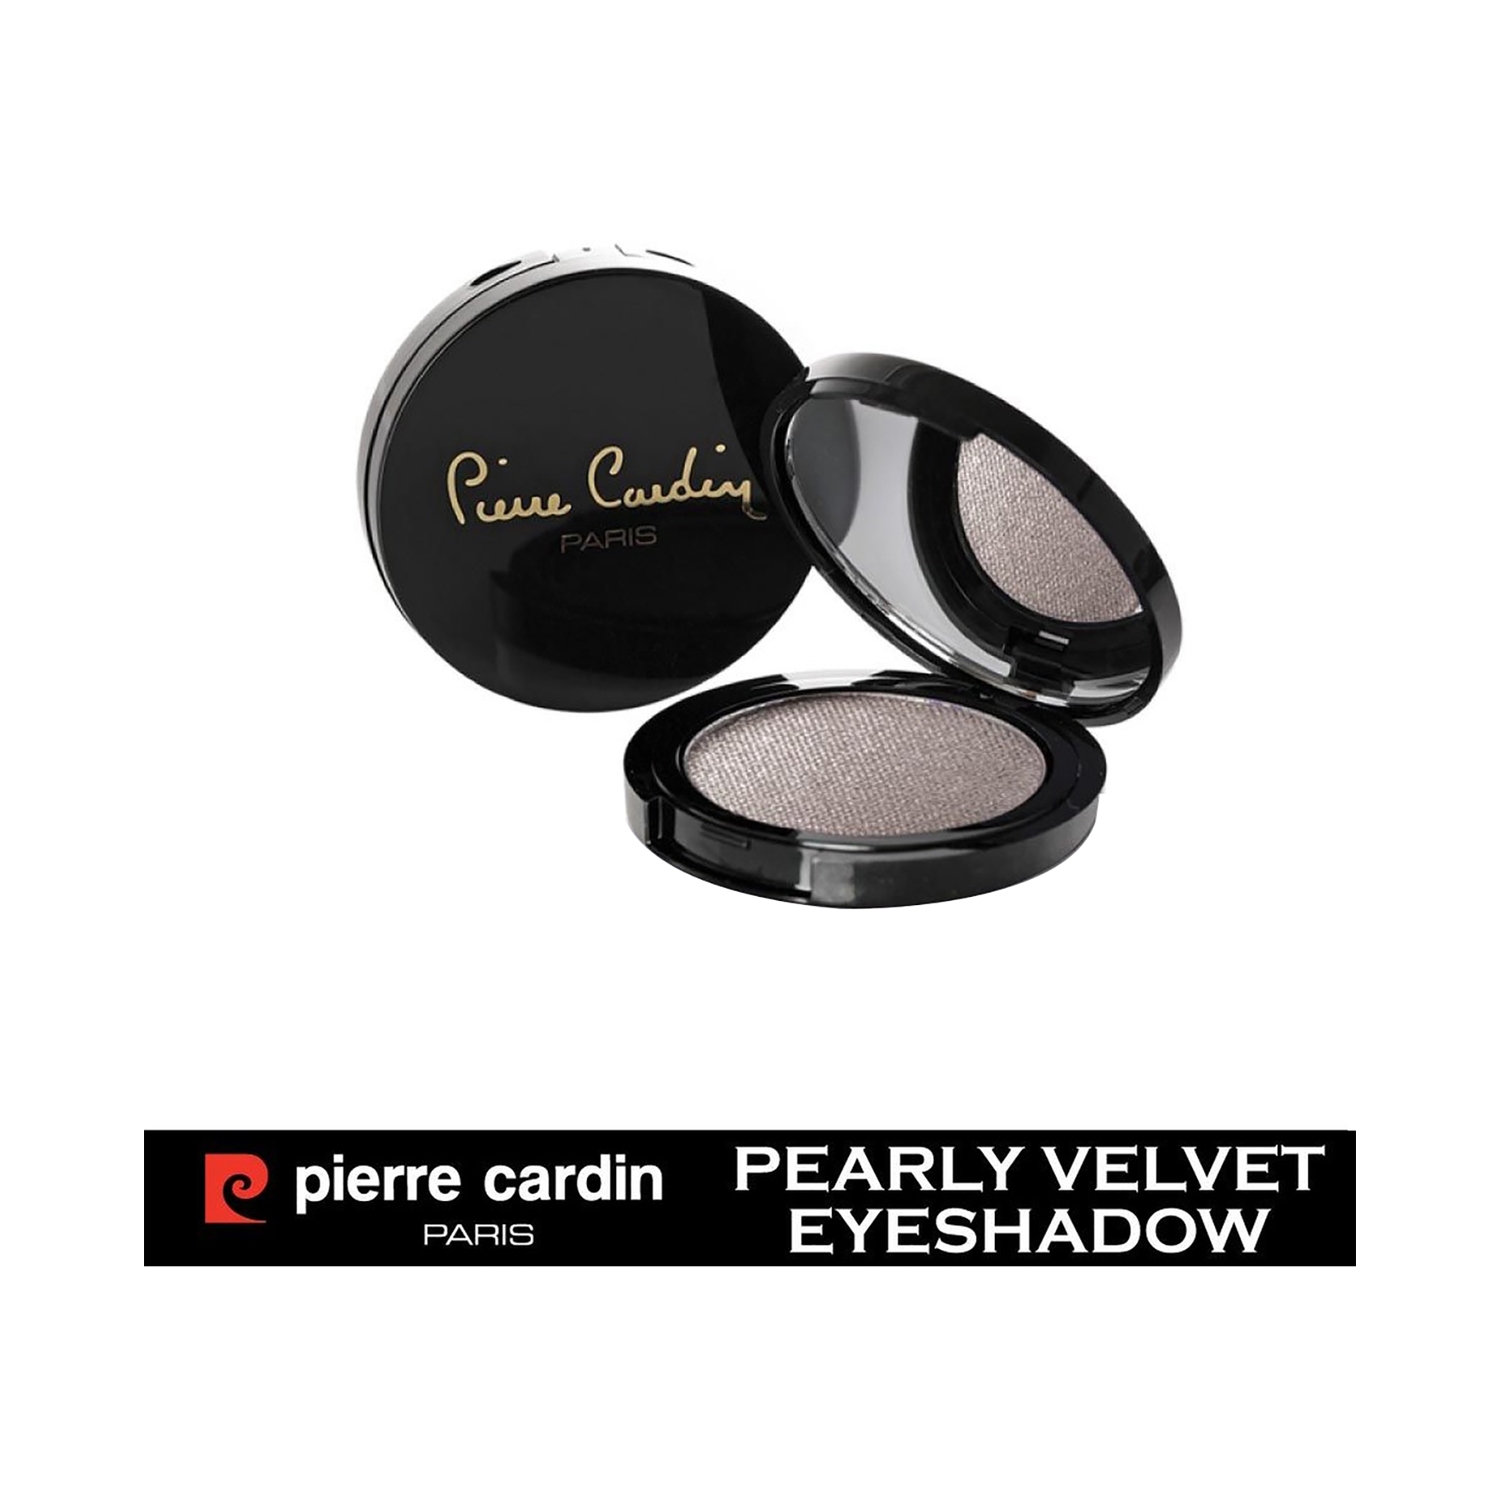 Pierre Cardin Paris | Pierre Cardin Paris Pearly Velvet Eye Shadow - 275 Mocha Brown (4g)